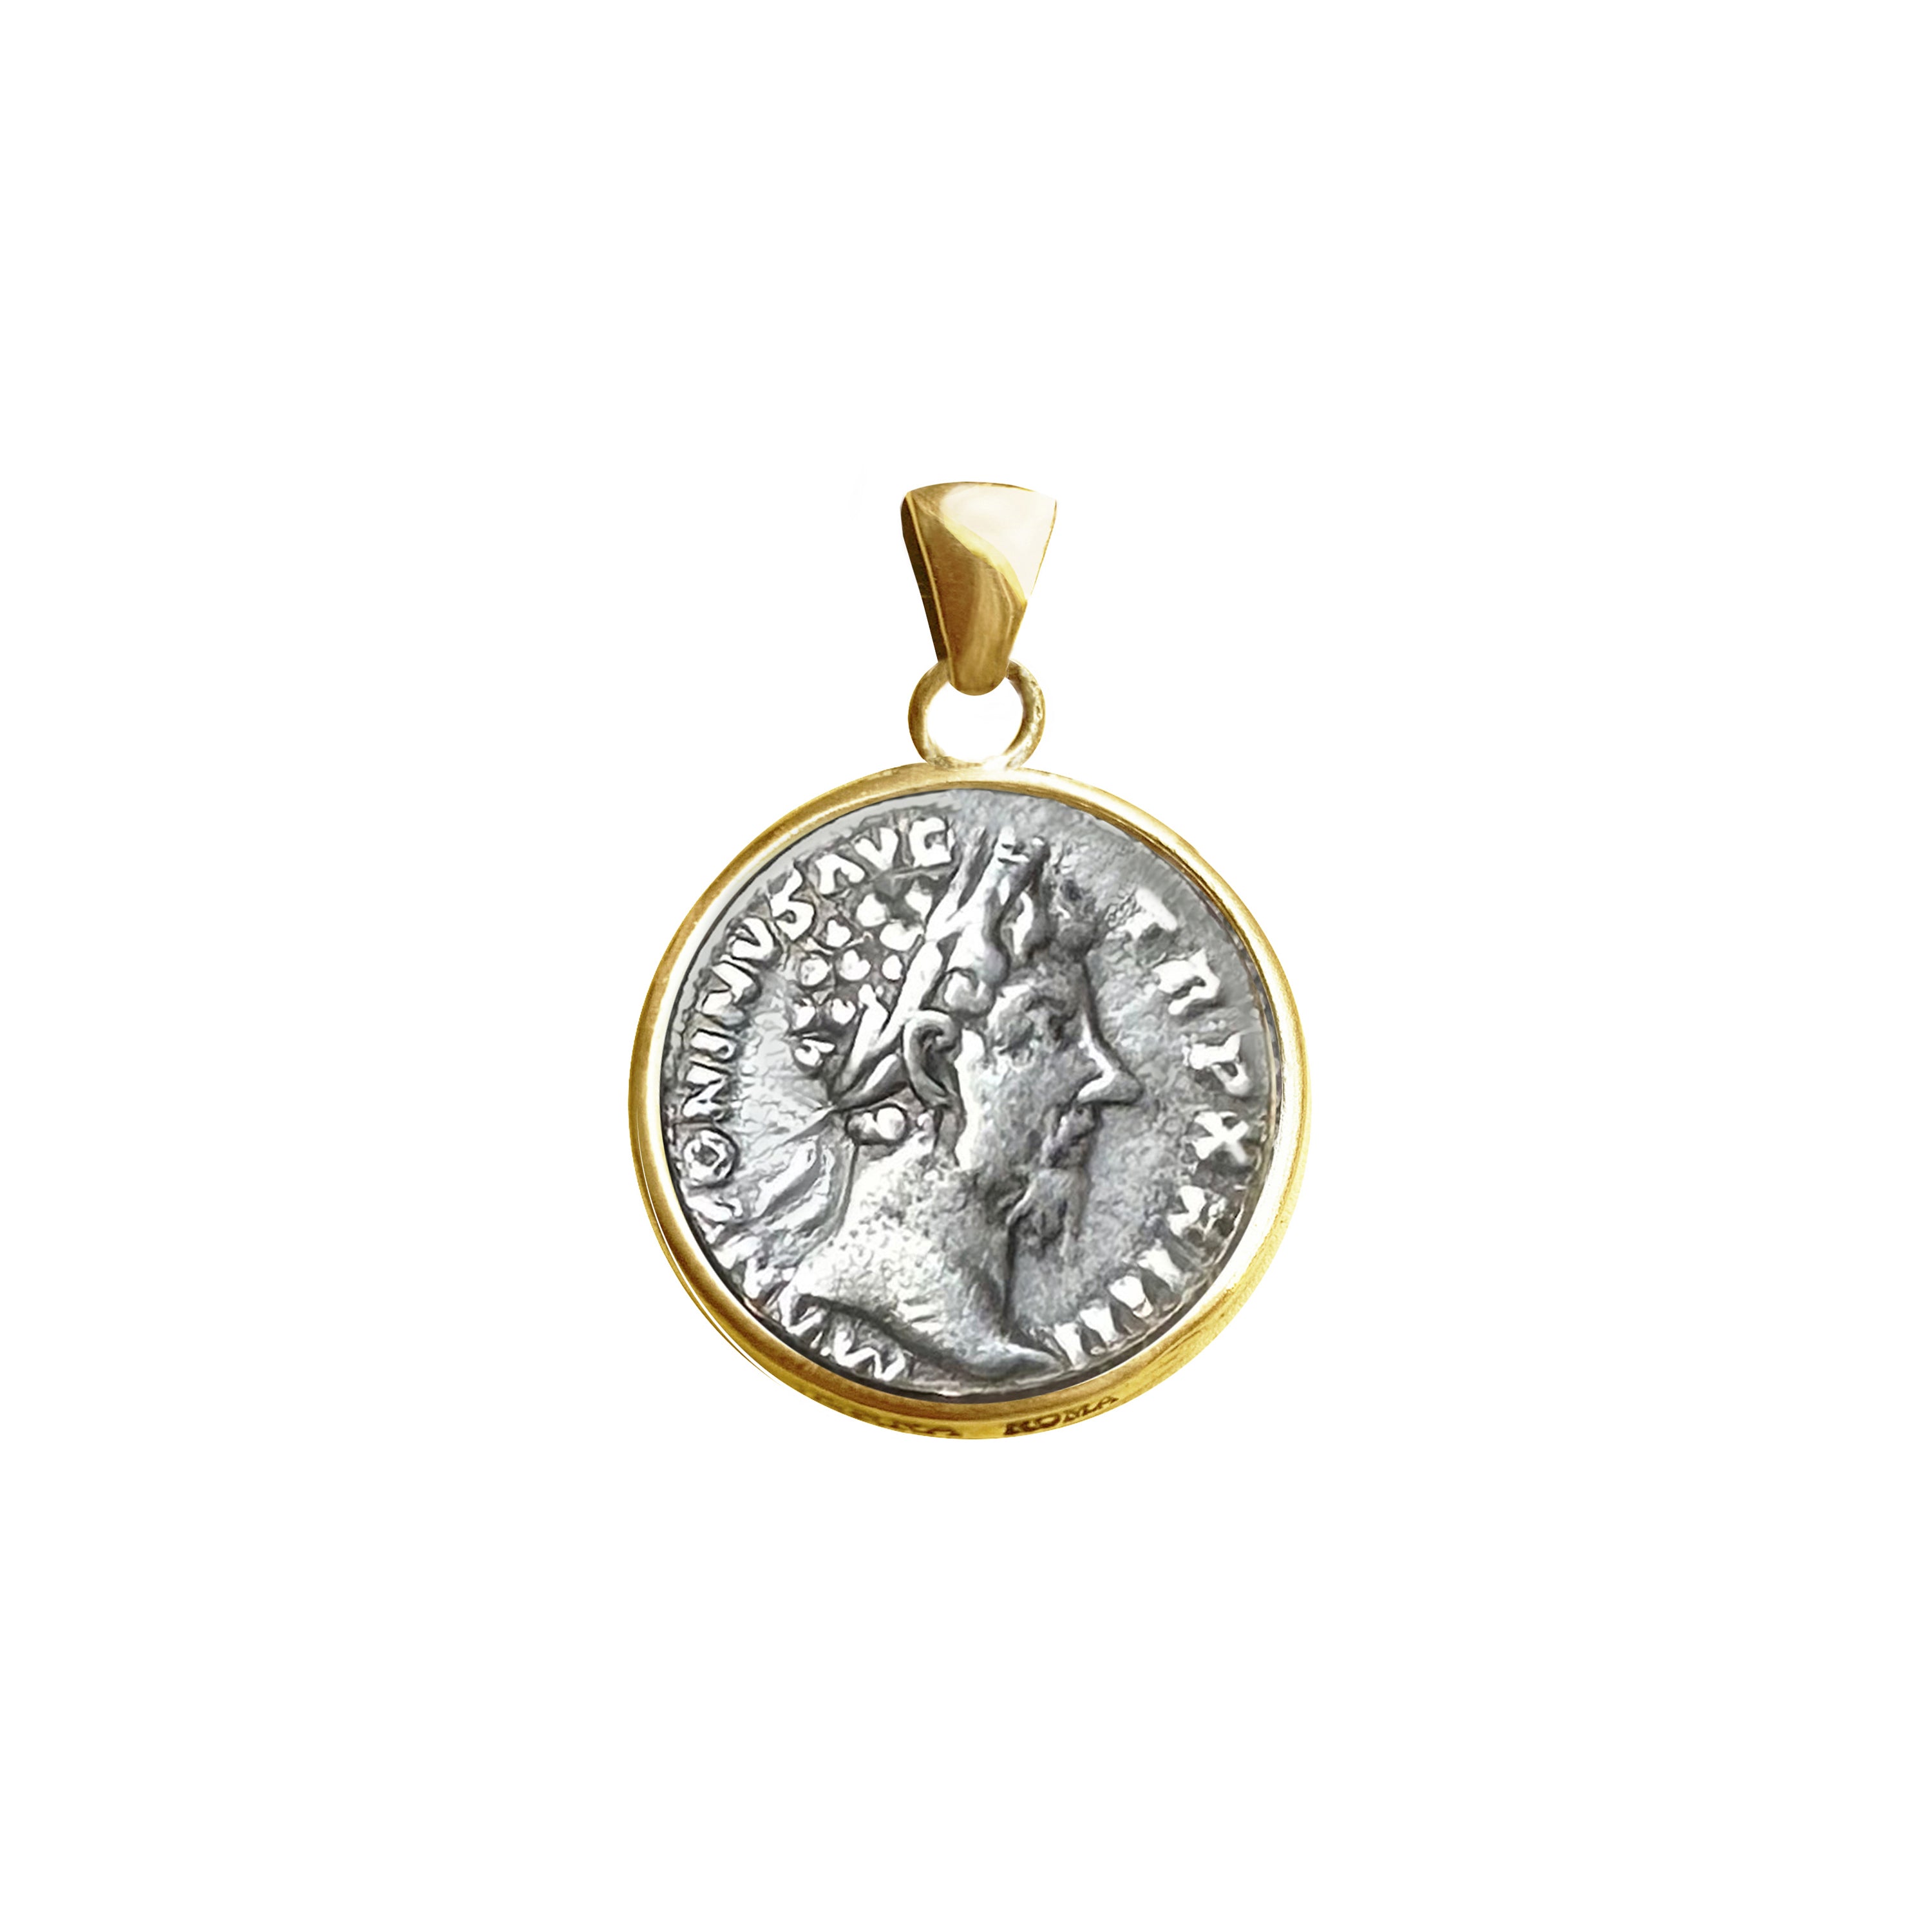 Genuine Roman Silver coin 18 Kt gold pendant depicting Emperor Marcus Aurelius